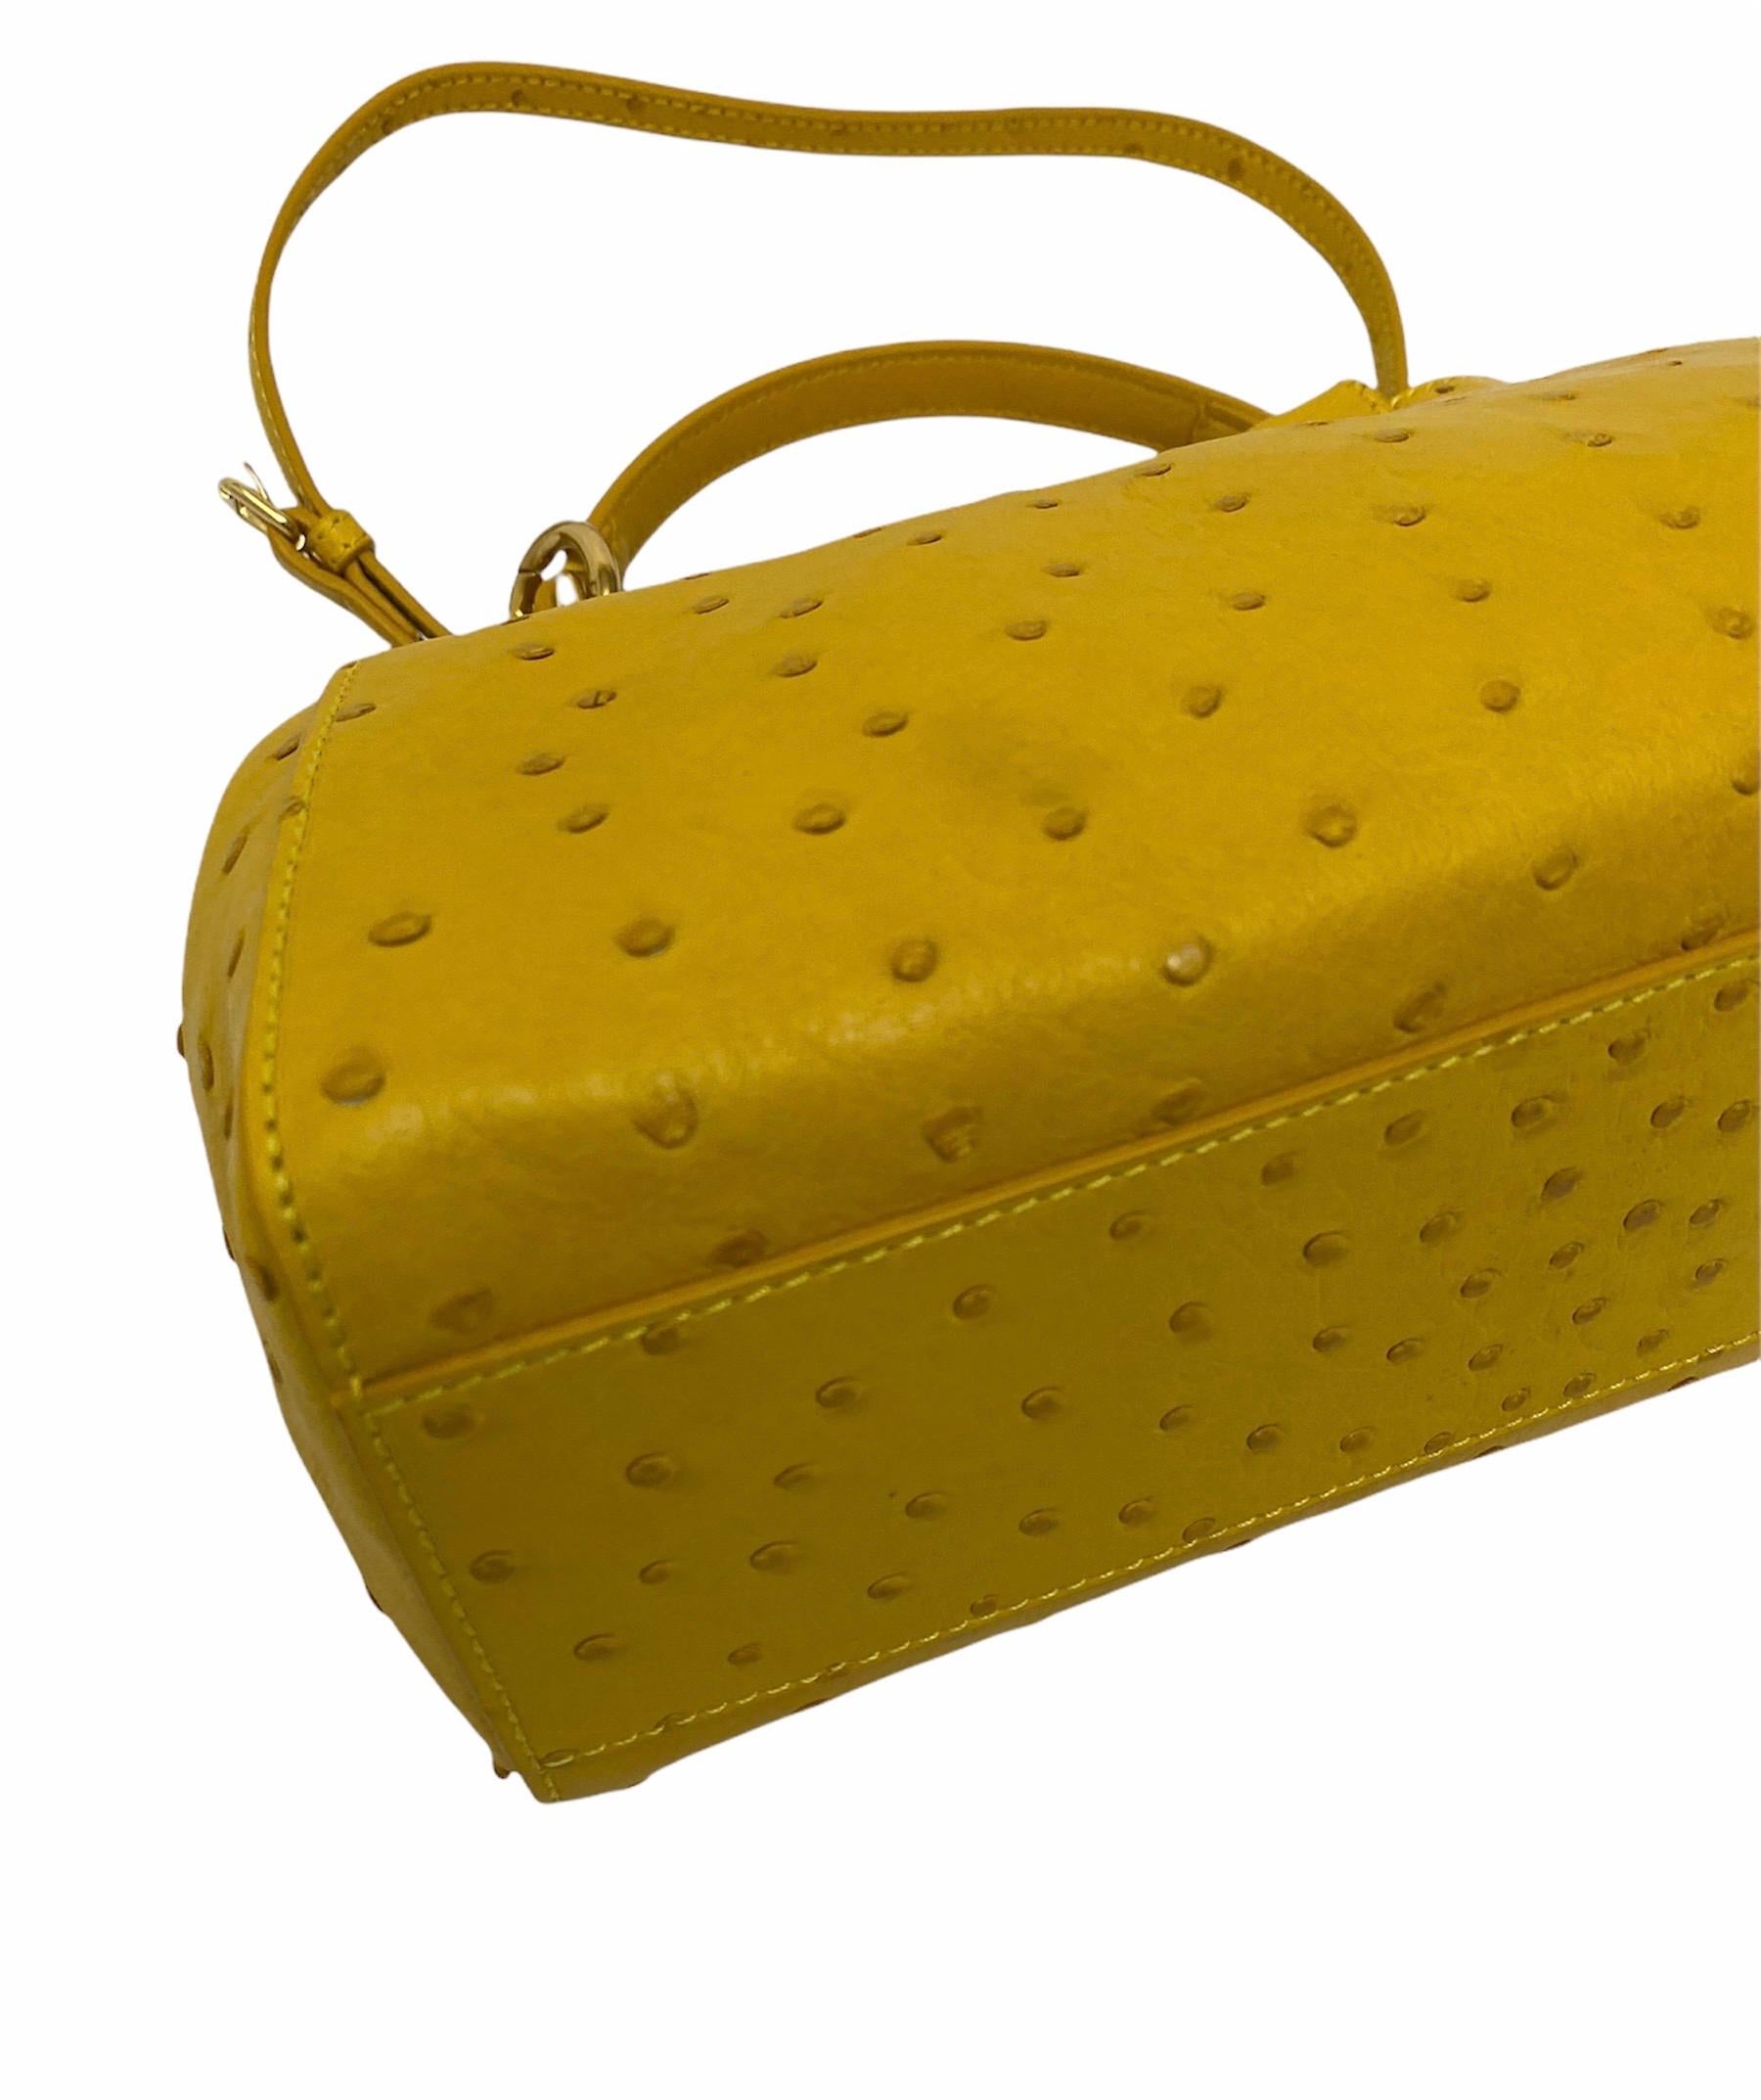 Fendi Yellow Leather Peekaboo Bag 1